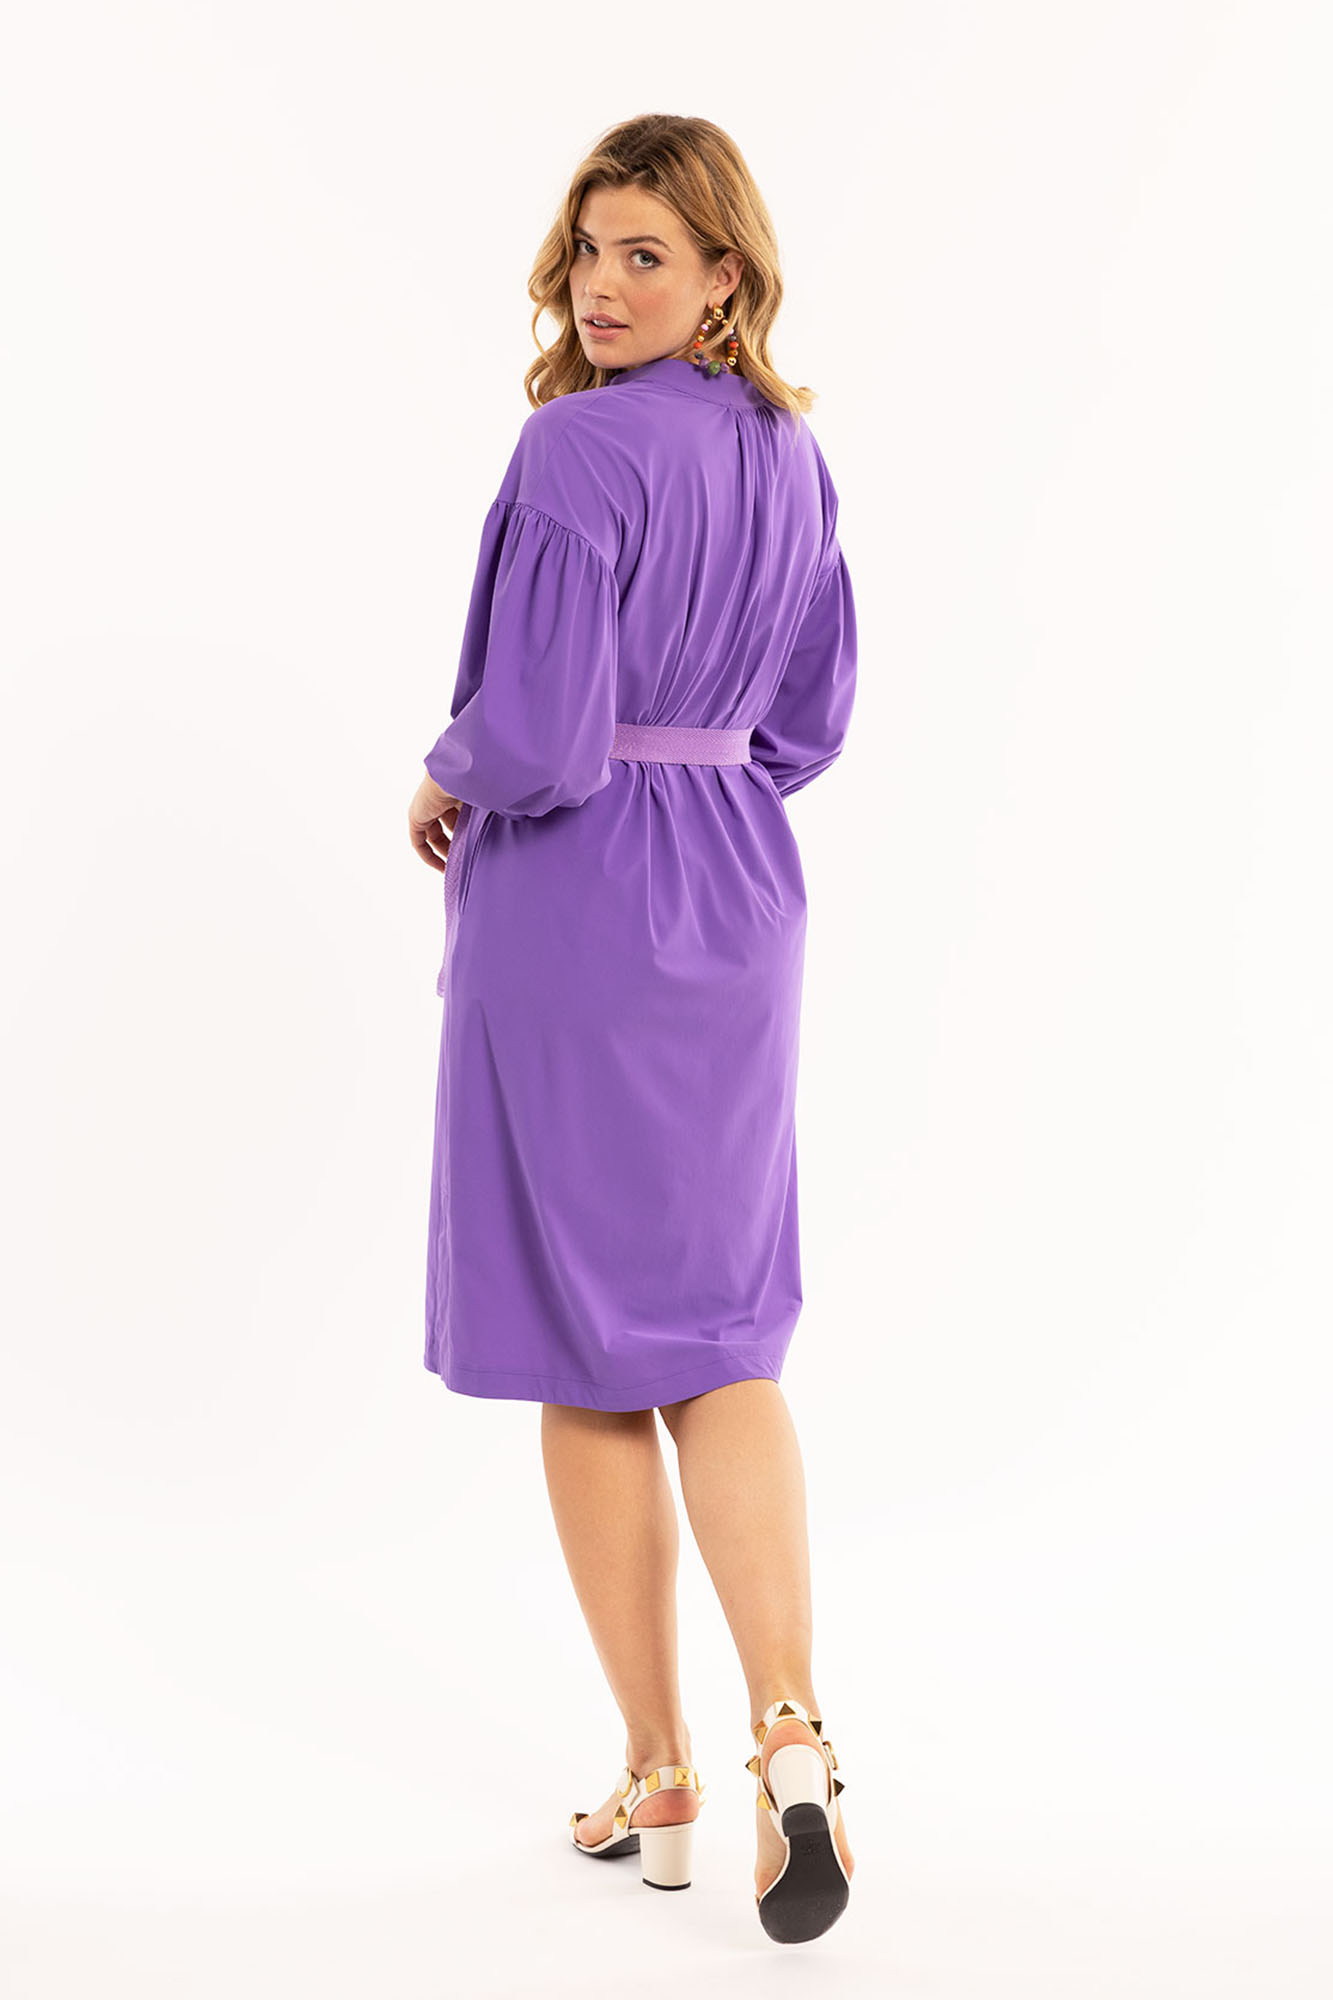 Studio Anneloes Travel Jurk Otis Dress Purple  Lila Paars